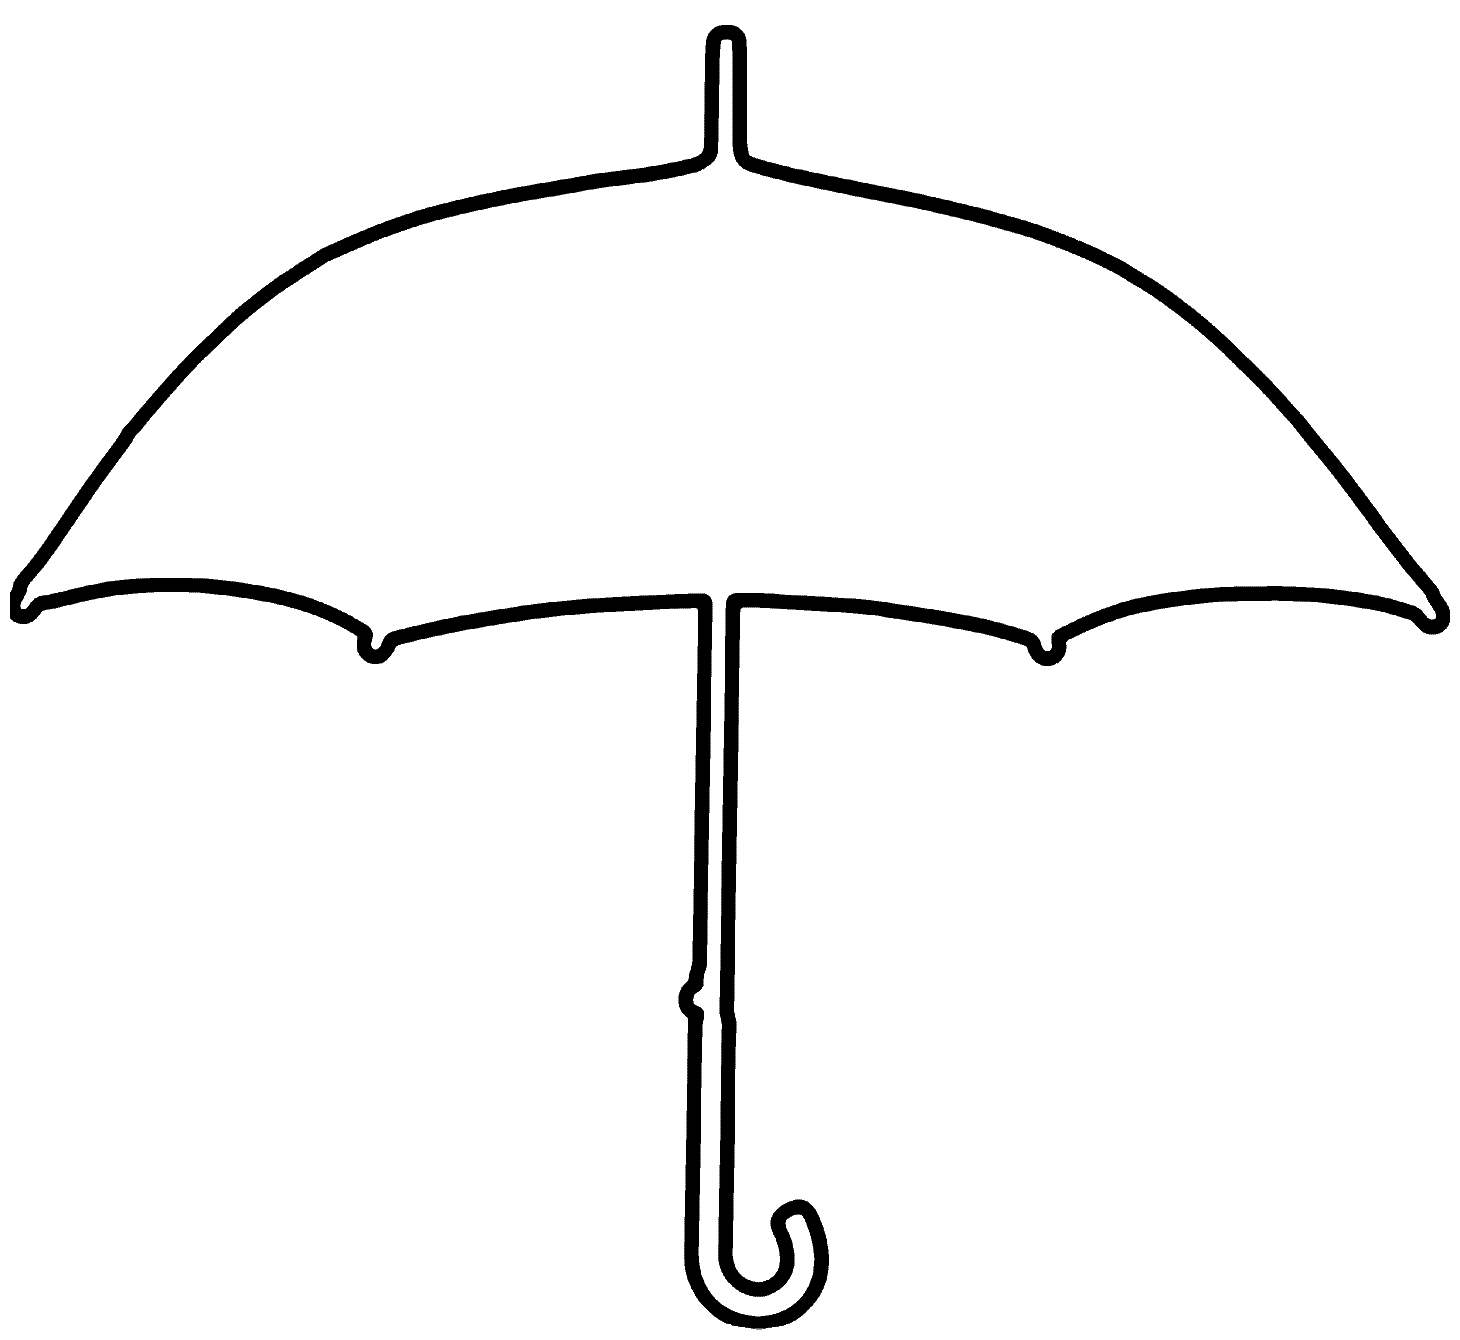 Umbrella | Coloring - Part 2